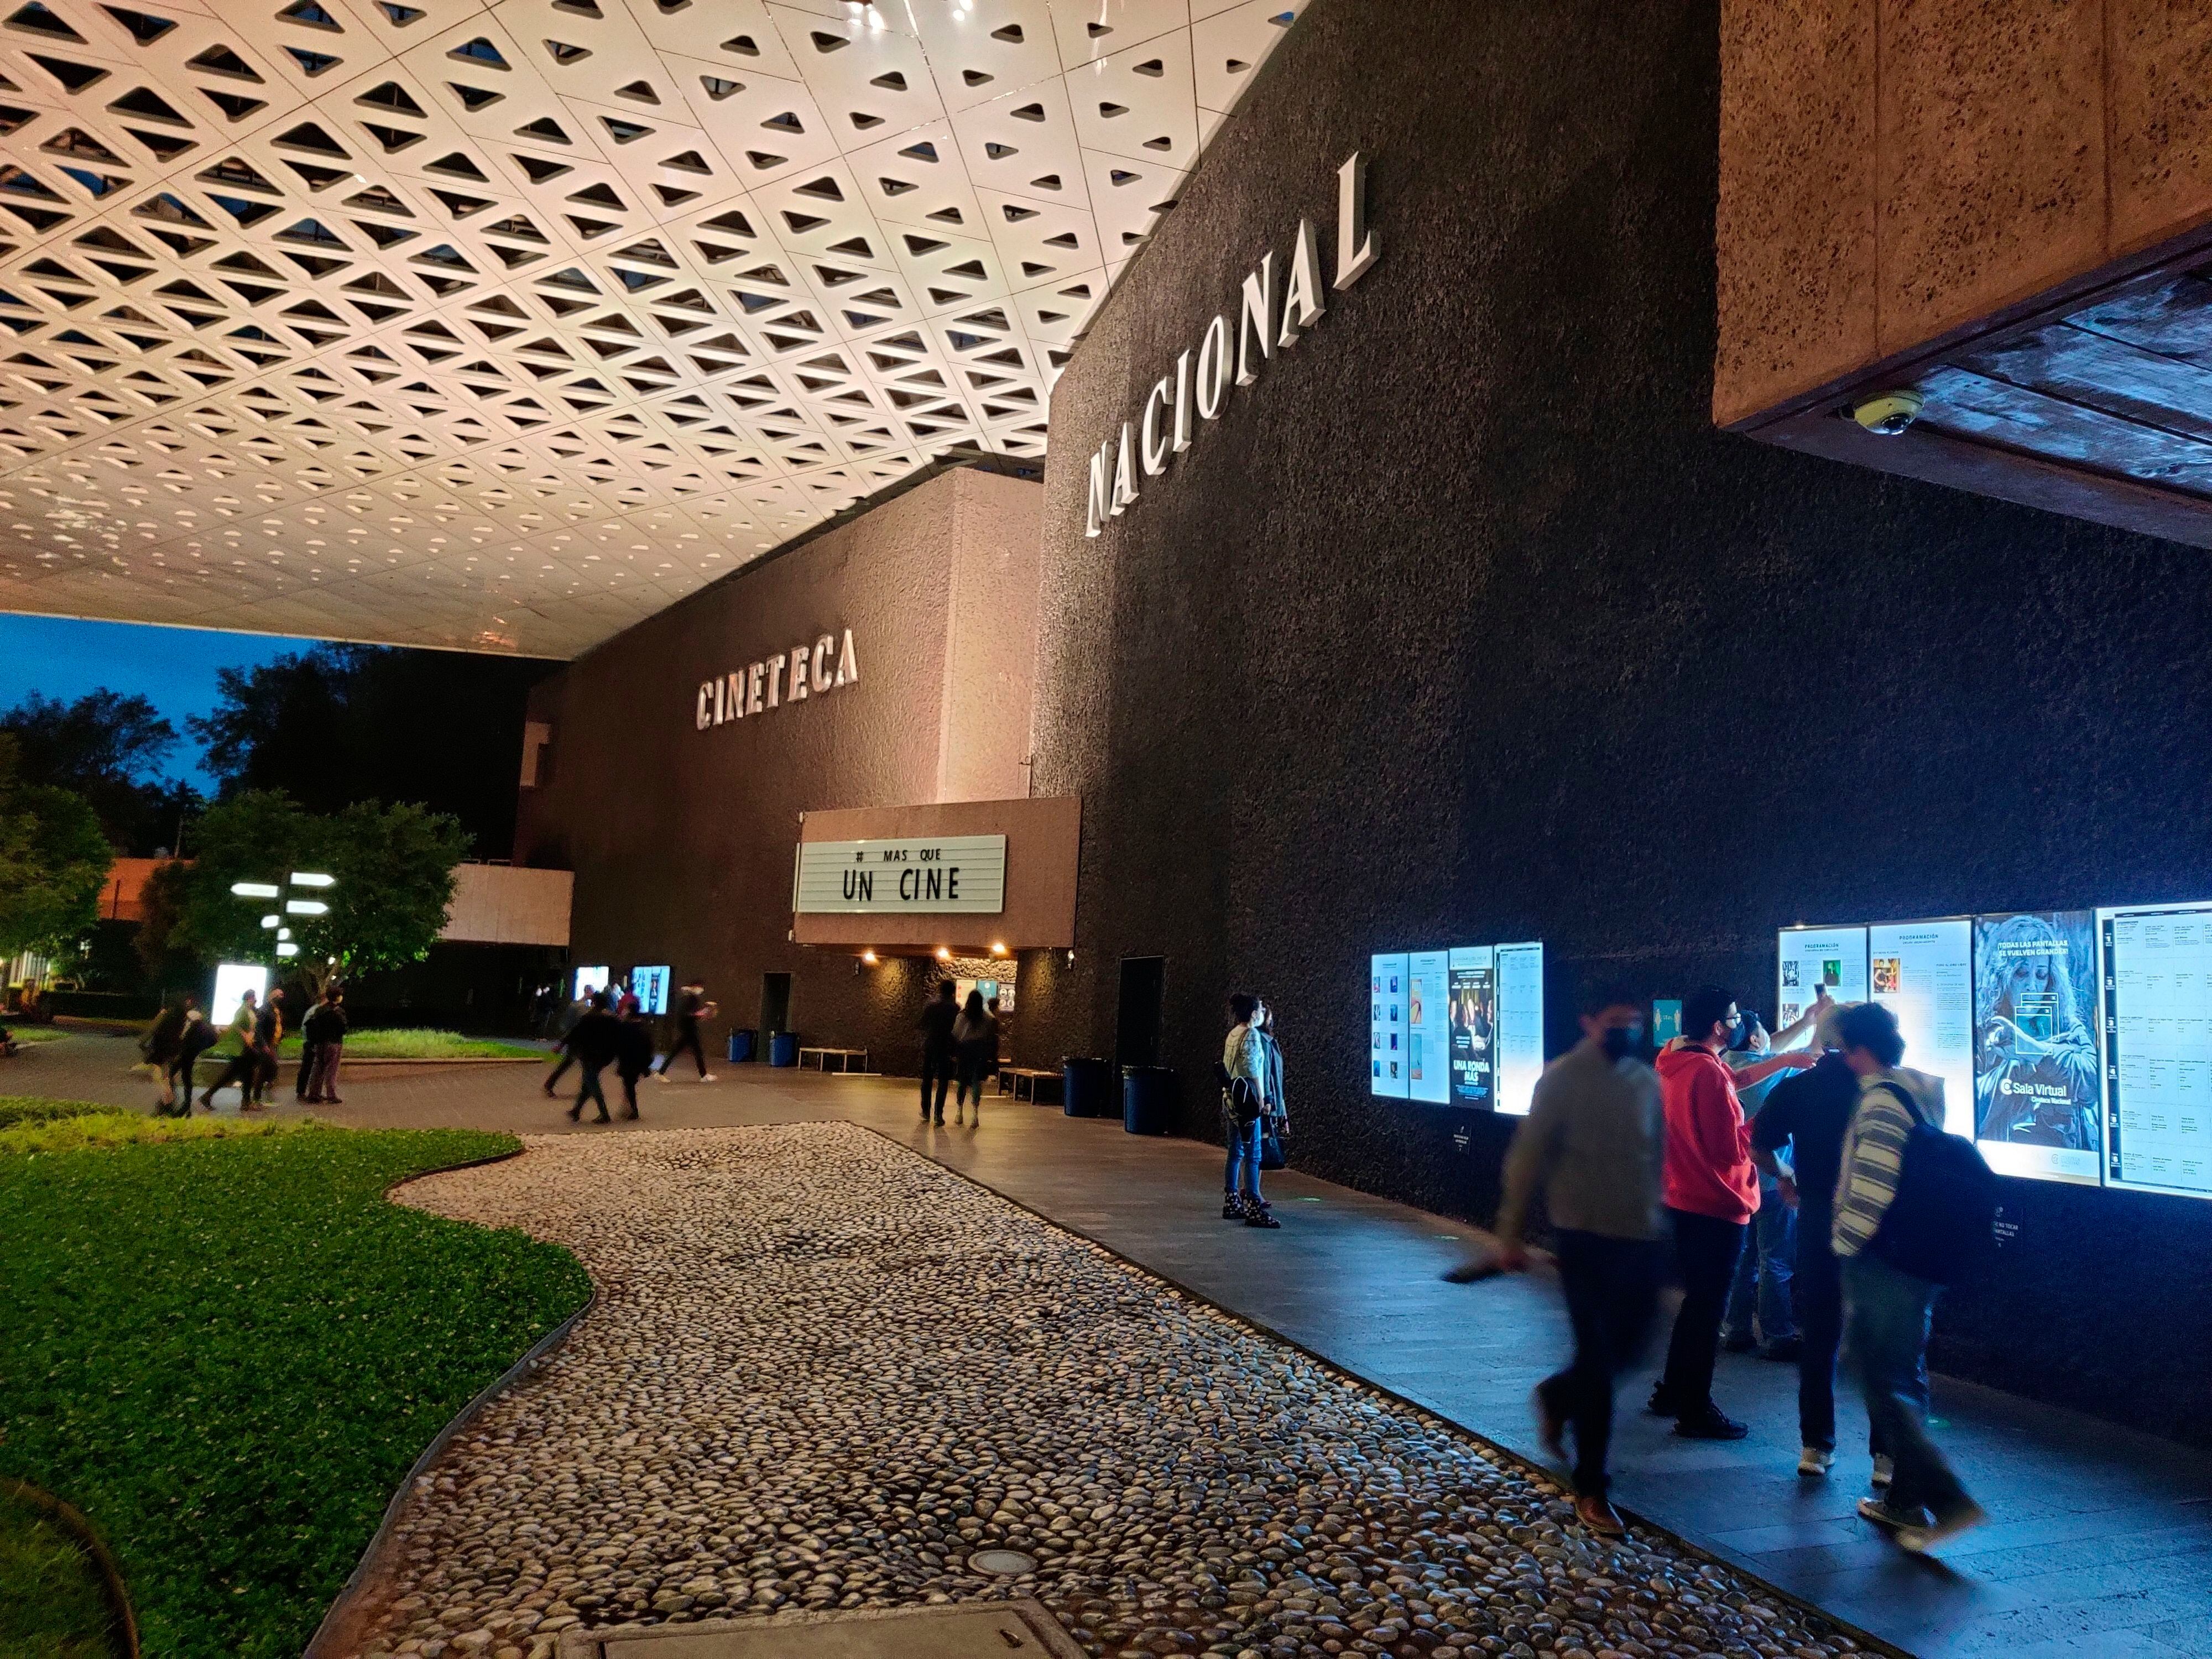 La Cineteca ha expandido su programación con una sala virtual disponible via streaming.